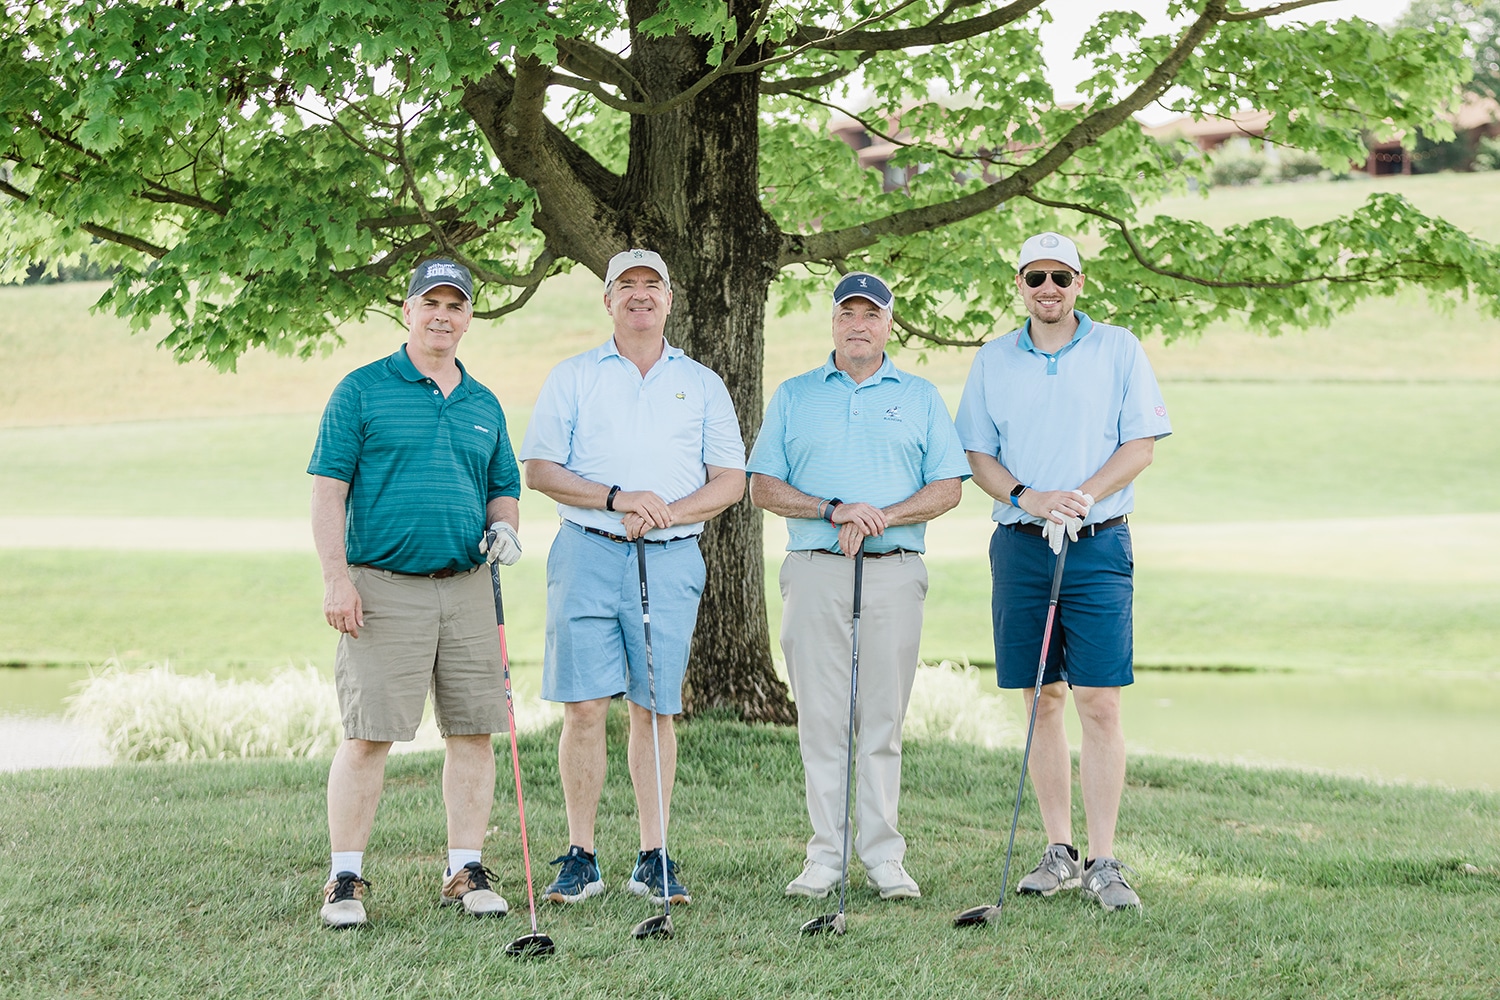 Phil Lian & Joan Mueller Phenomenal Golf Classic - Monday, May 23rd, 2022 - Union League Liberty Hill Golf Club, 800 Ridge Pike, Lafayette Hill, PA 19444